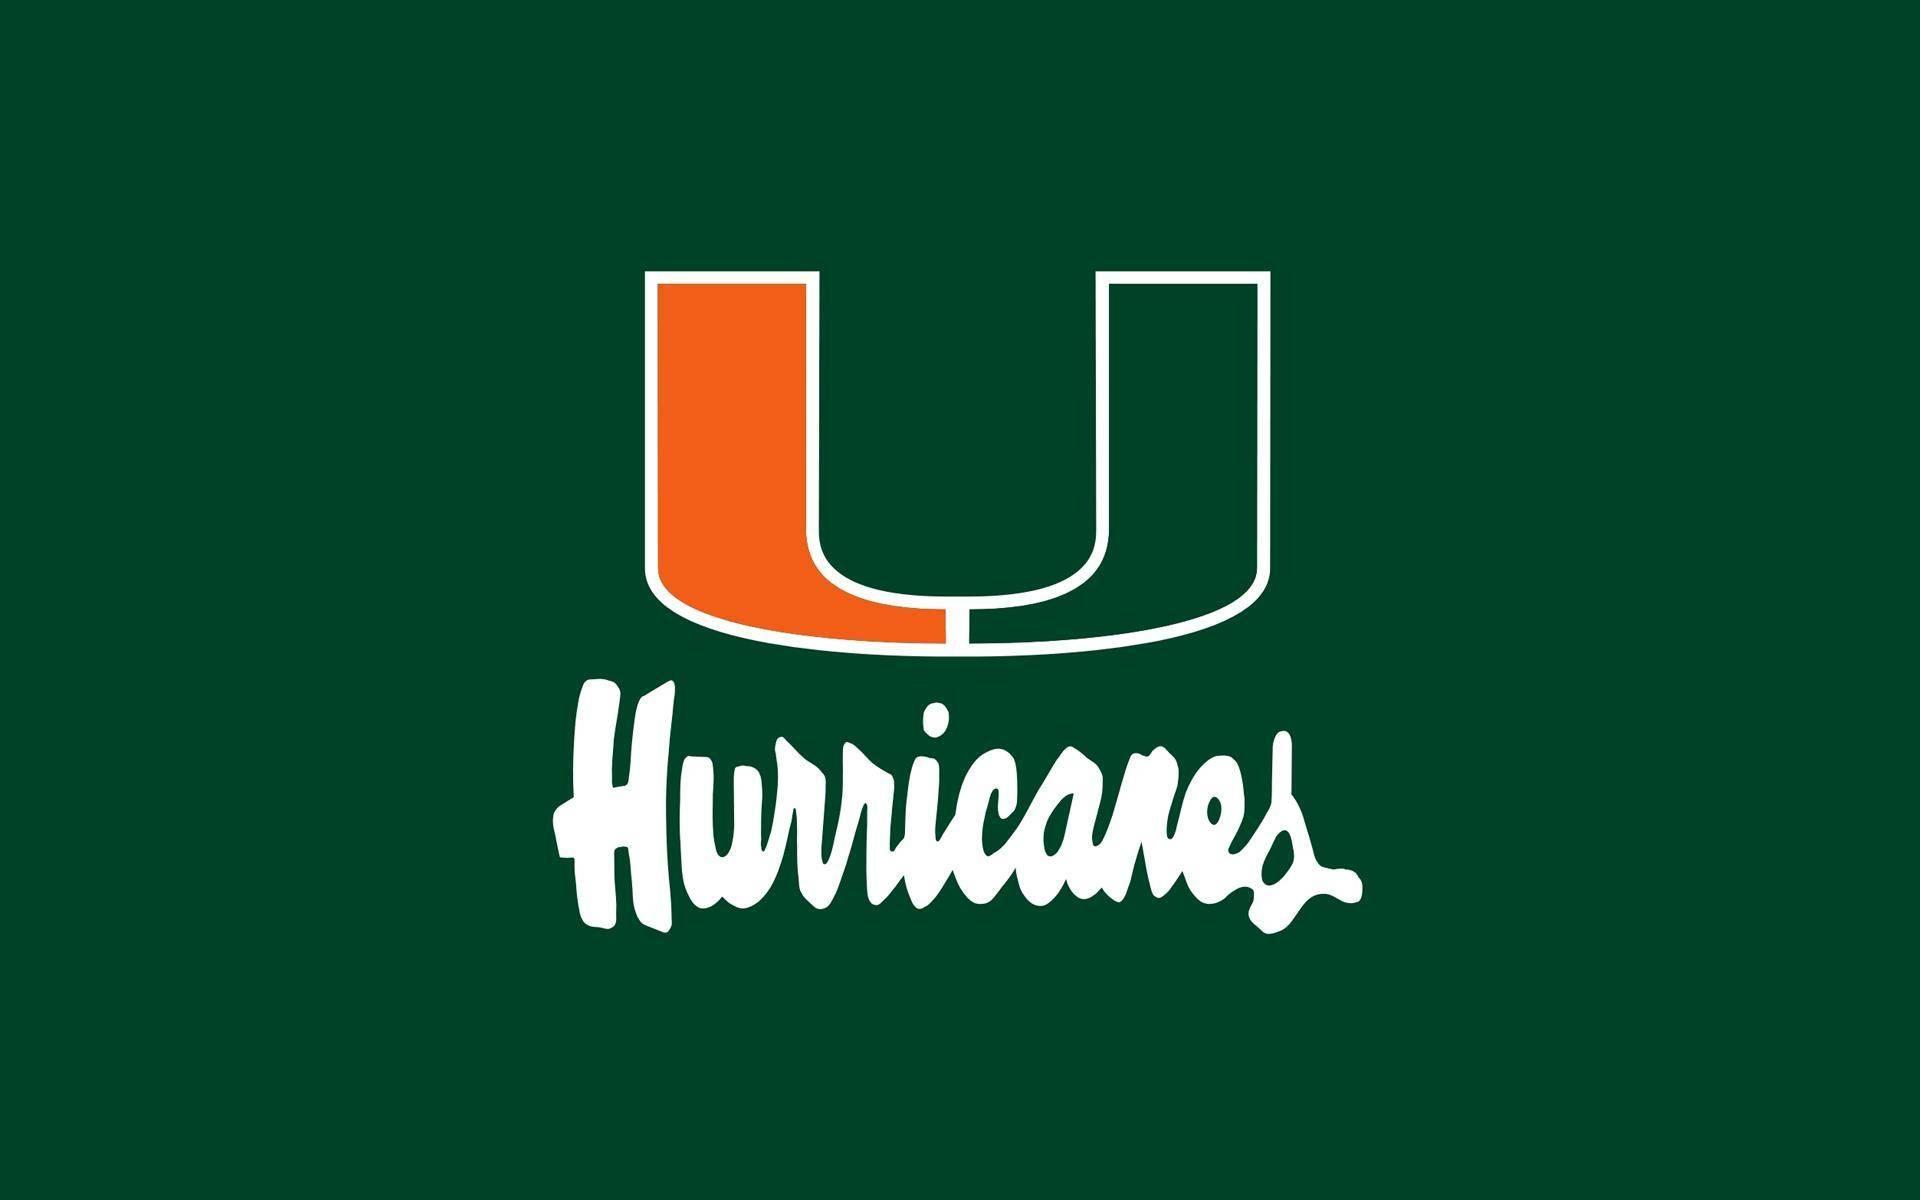 Official Logo University of Miami Hurricanes taken from Miami